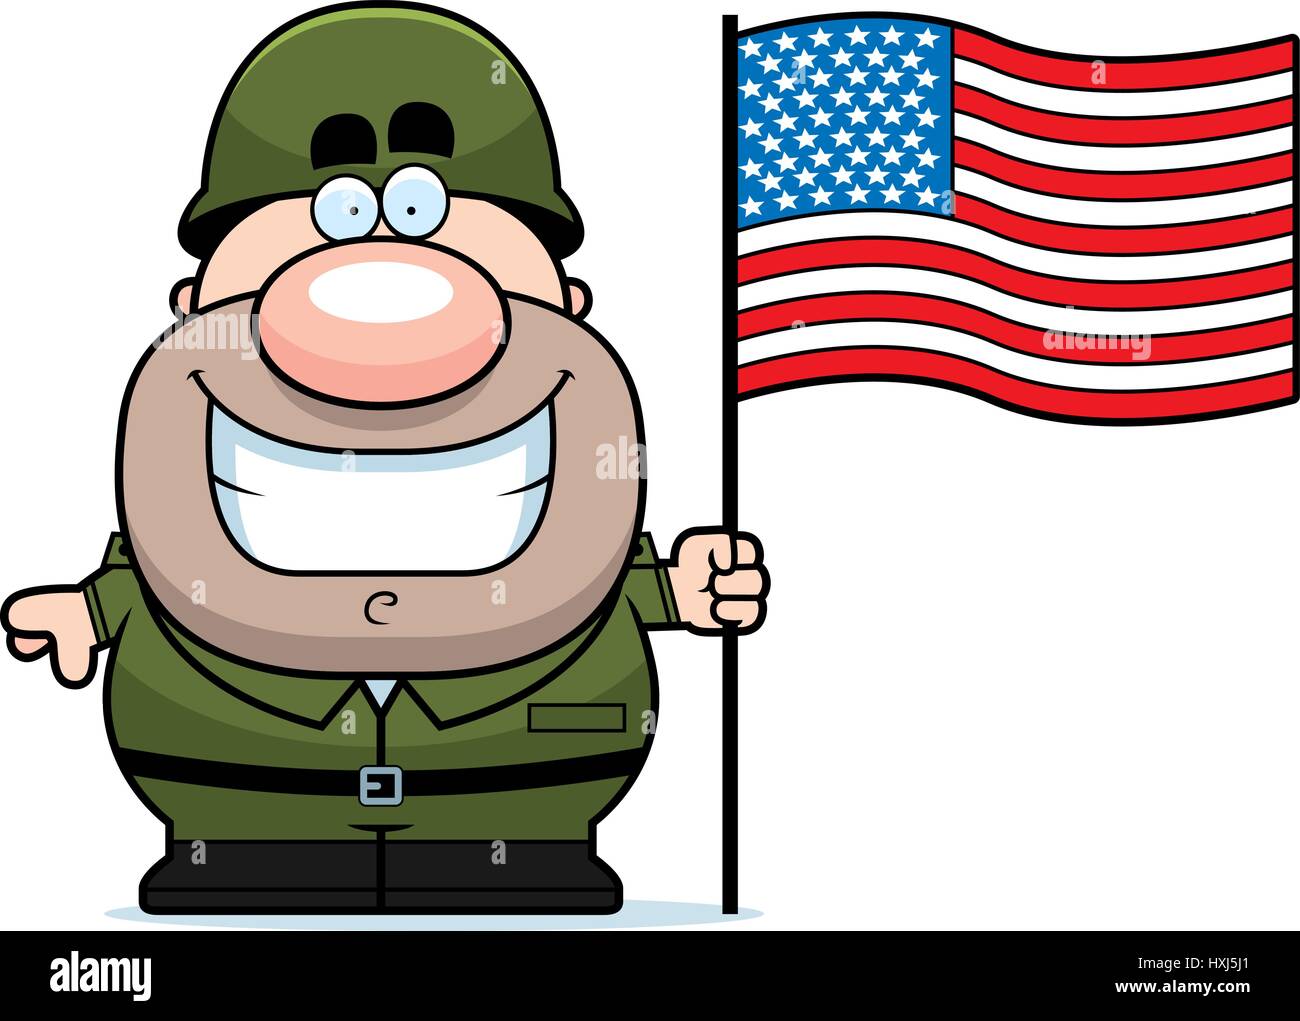 Eine Karikatur Illustration eines Armee-Soldaten mit einer amerikanischen Flagge. Stock Vektor